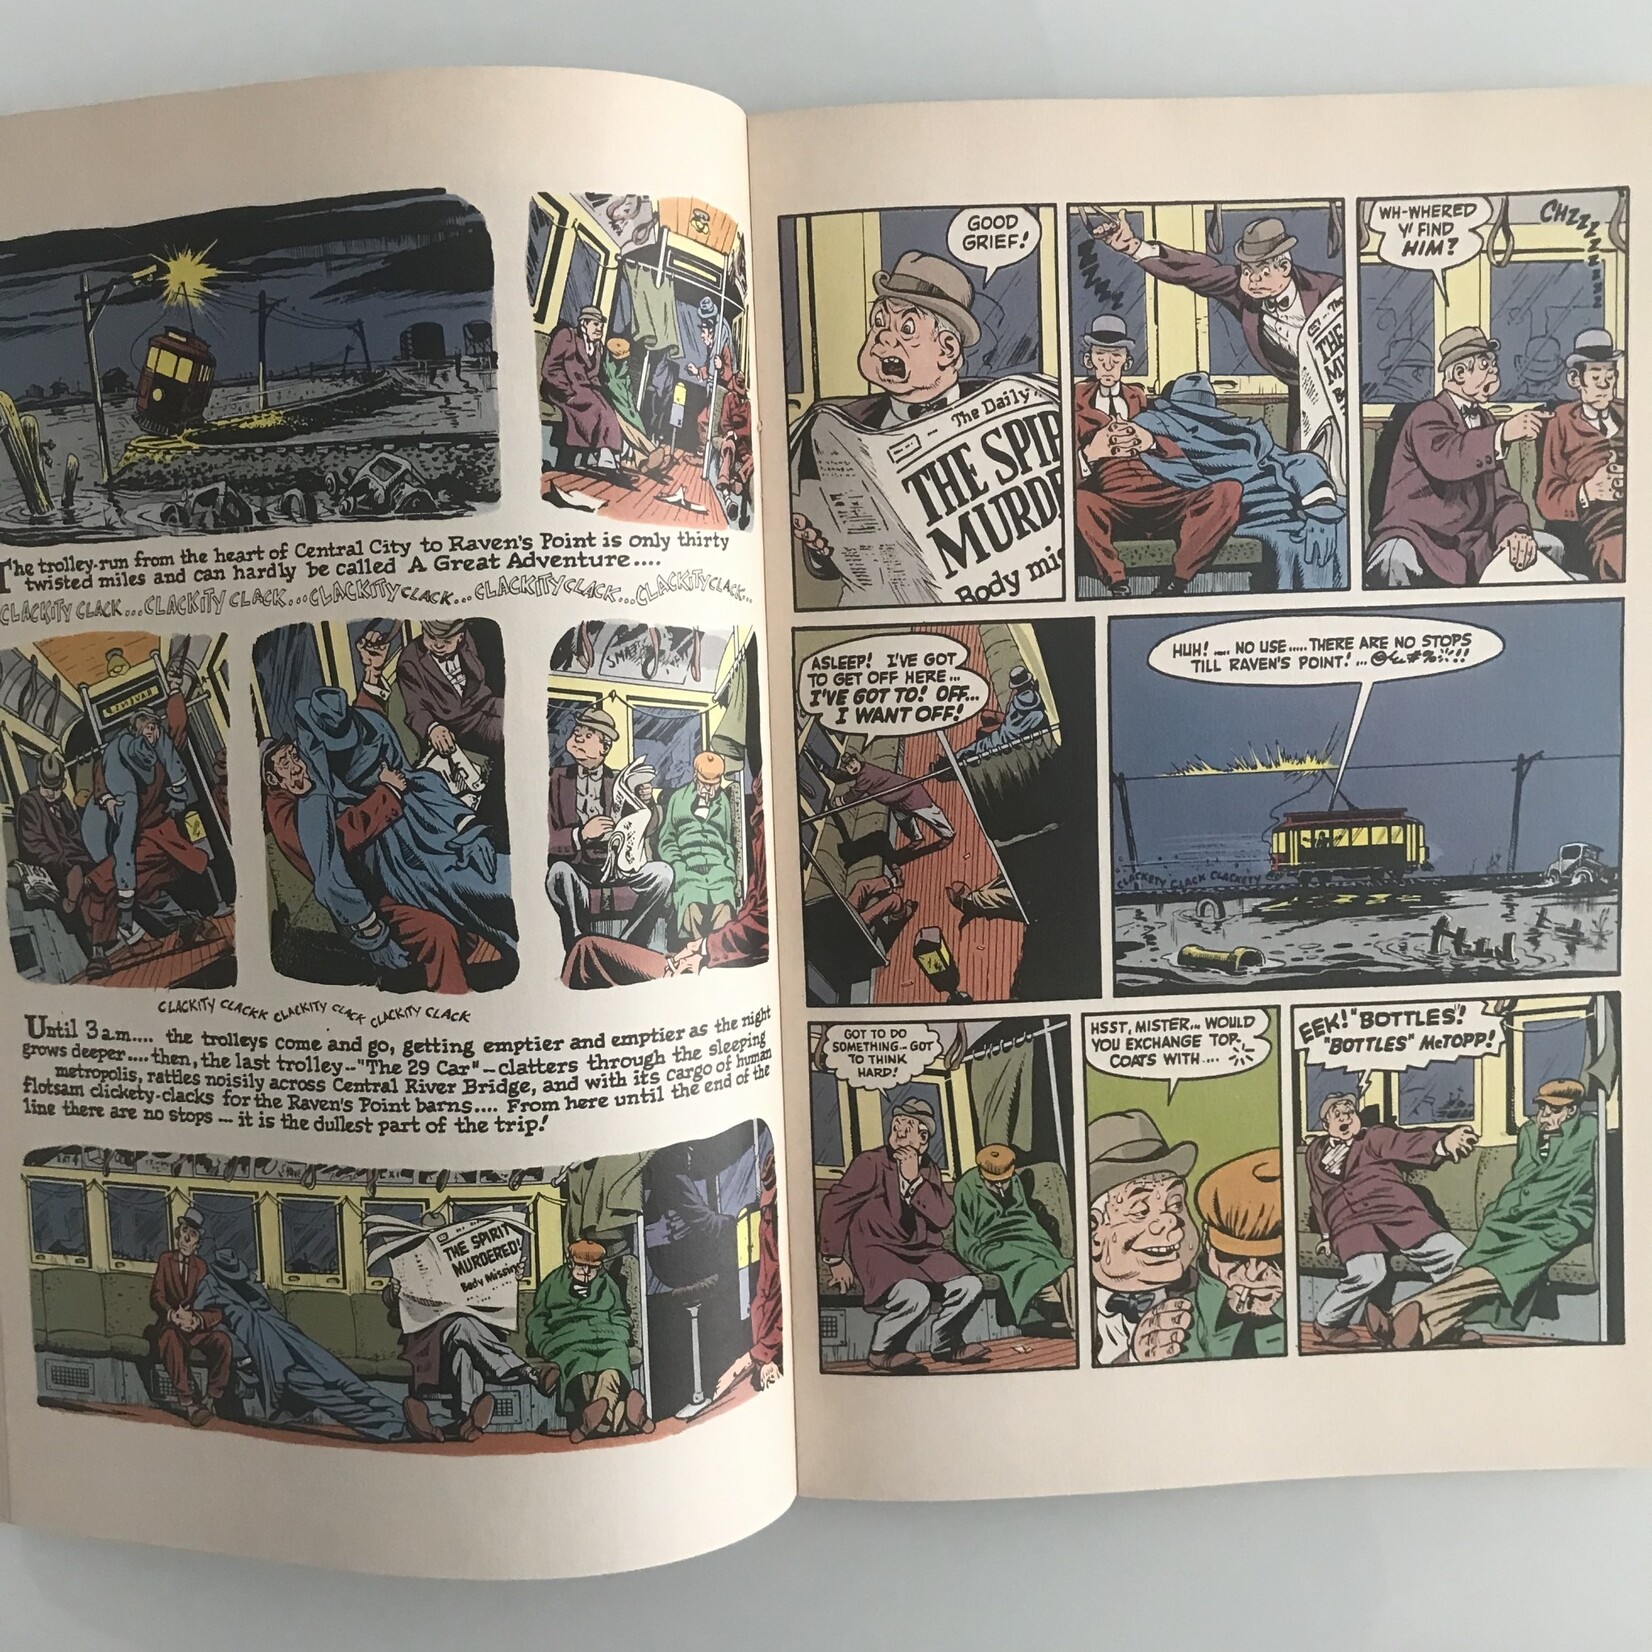 Spirit - Vol. 1 #04 March 1984 - Comic Book